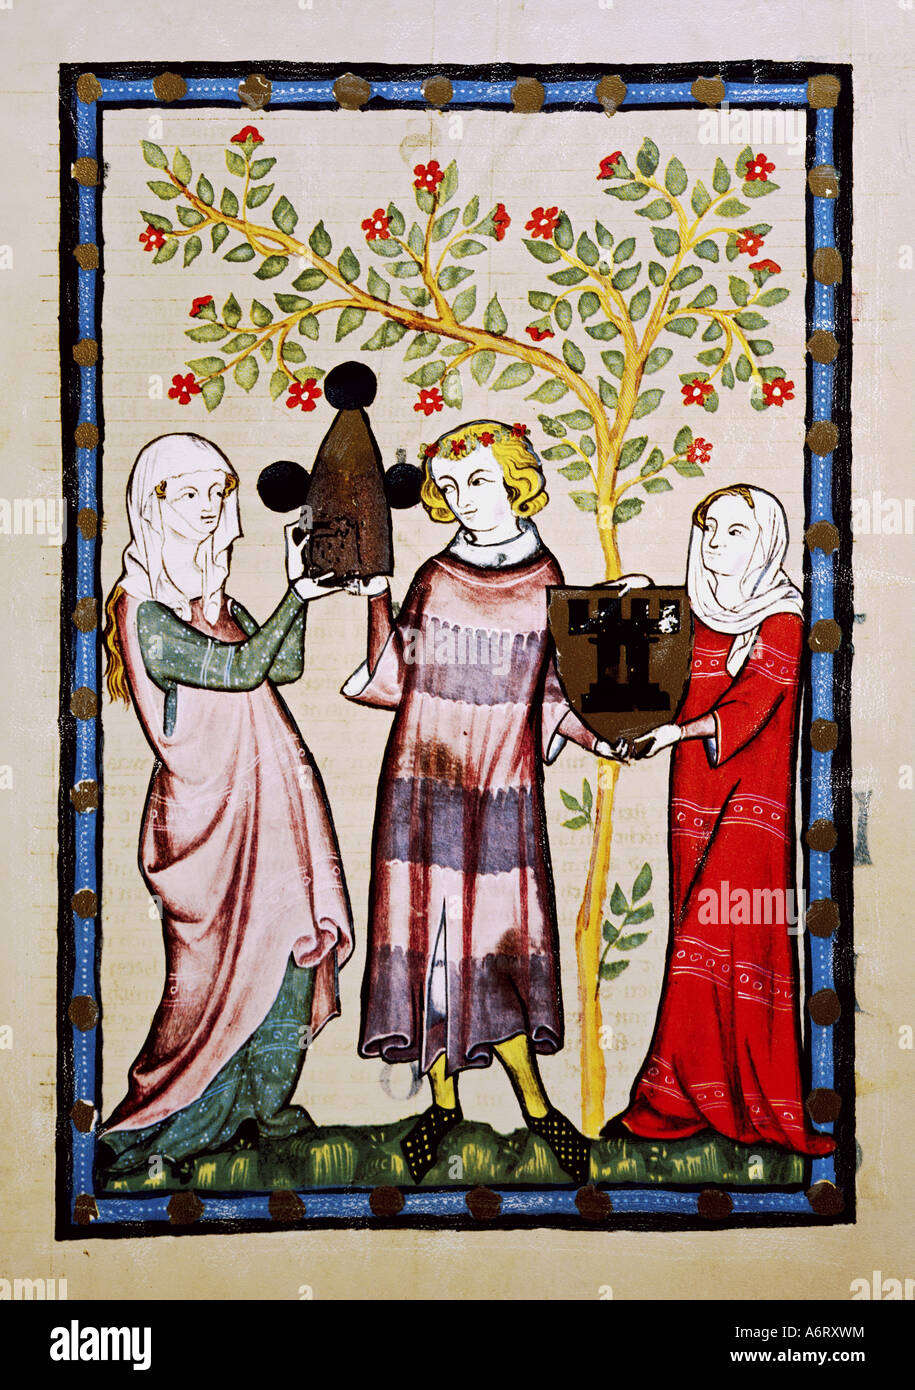 Belle arti, medioevo, gotico, illuminazione, Codex Manesse, Zurigo, 1305 - 1340, Otto vom Turme, coprendo il colore su carta pergamena, uni Foto Stock